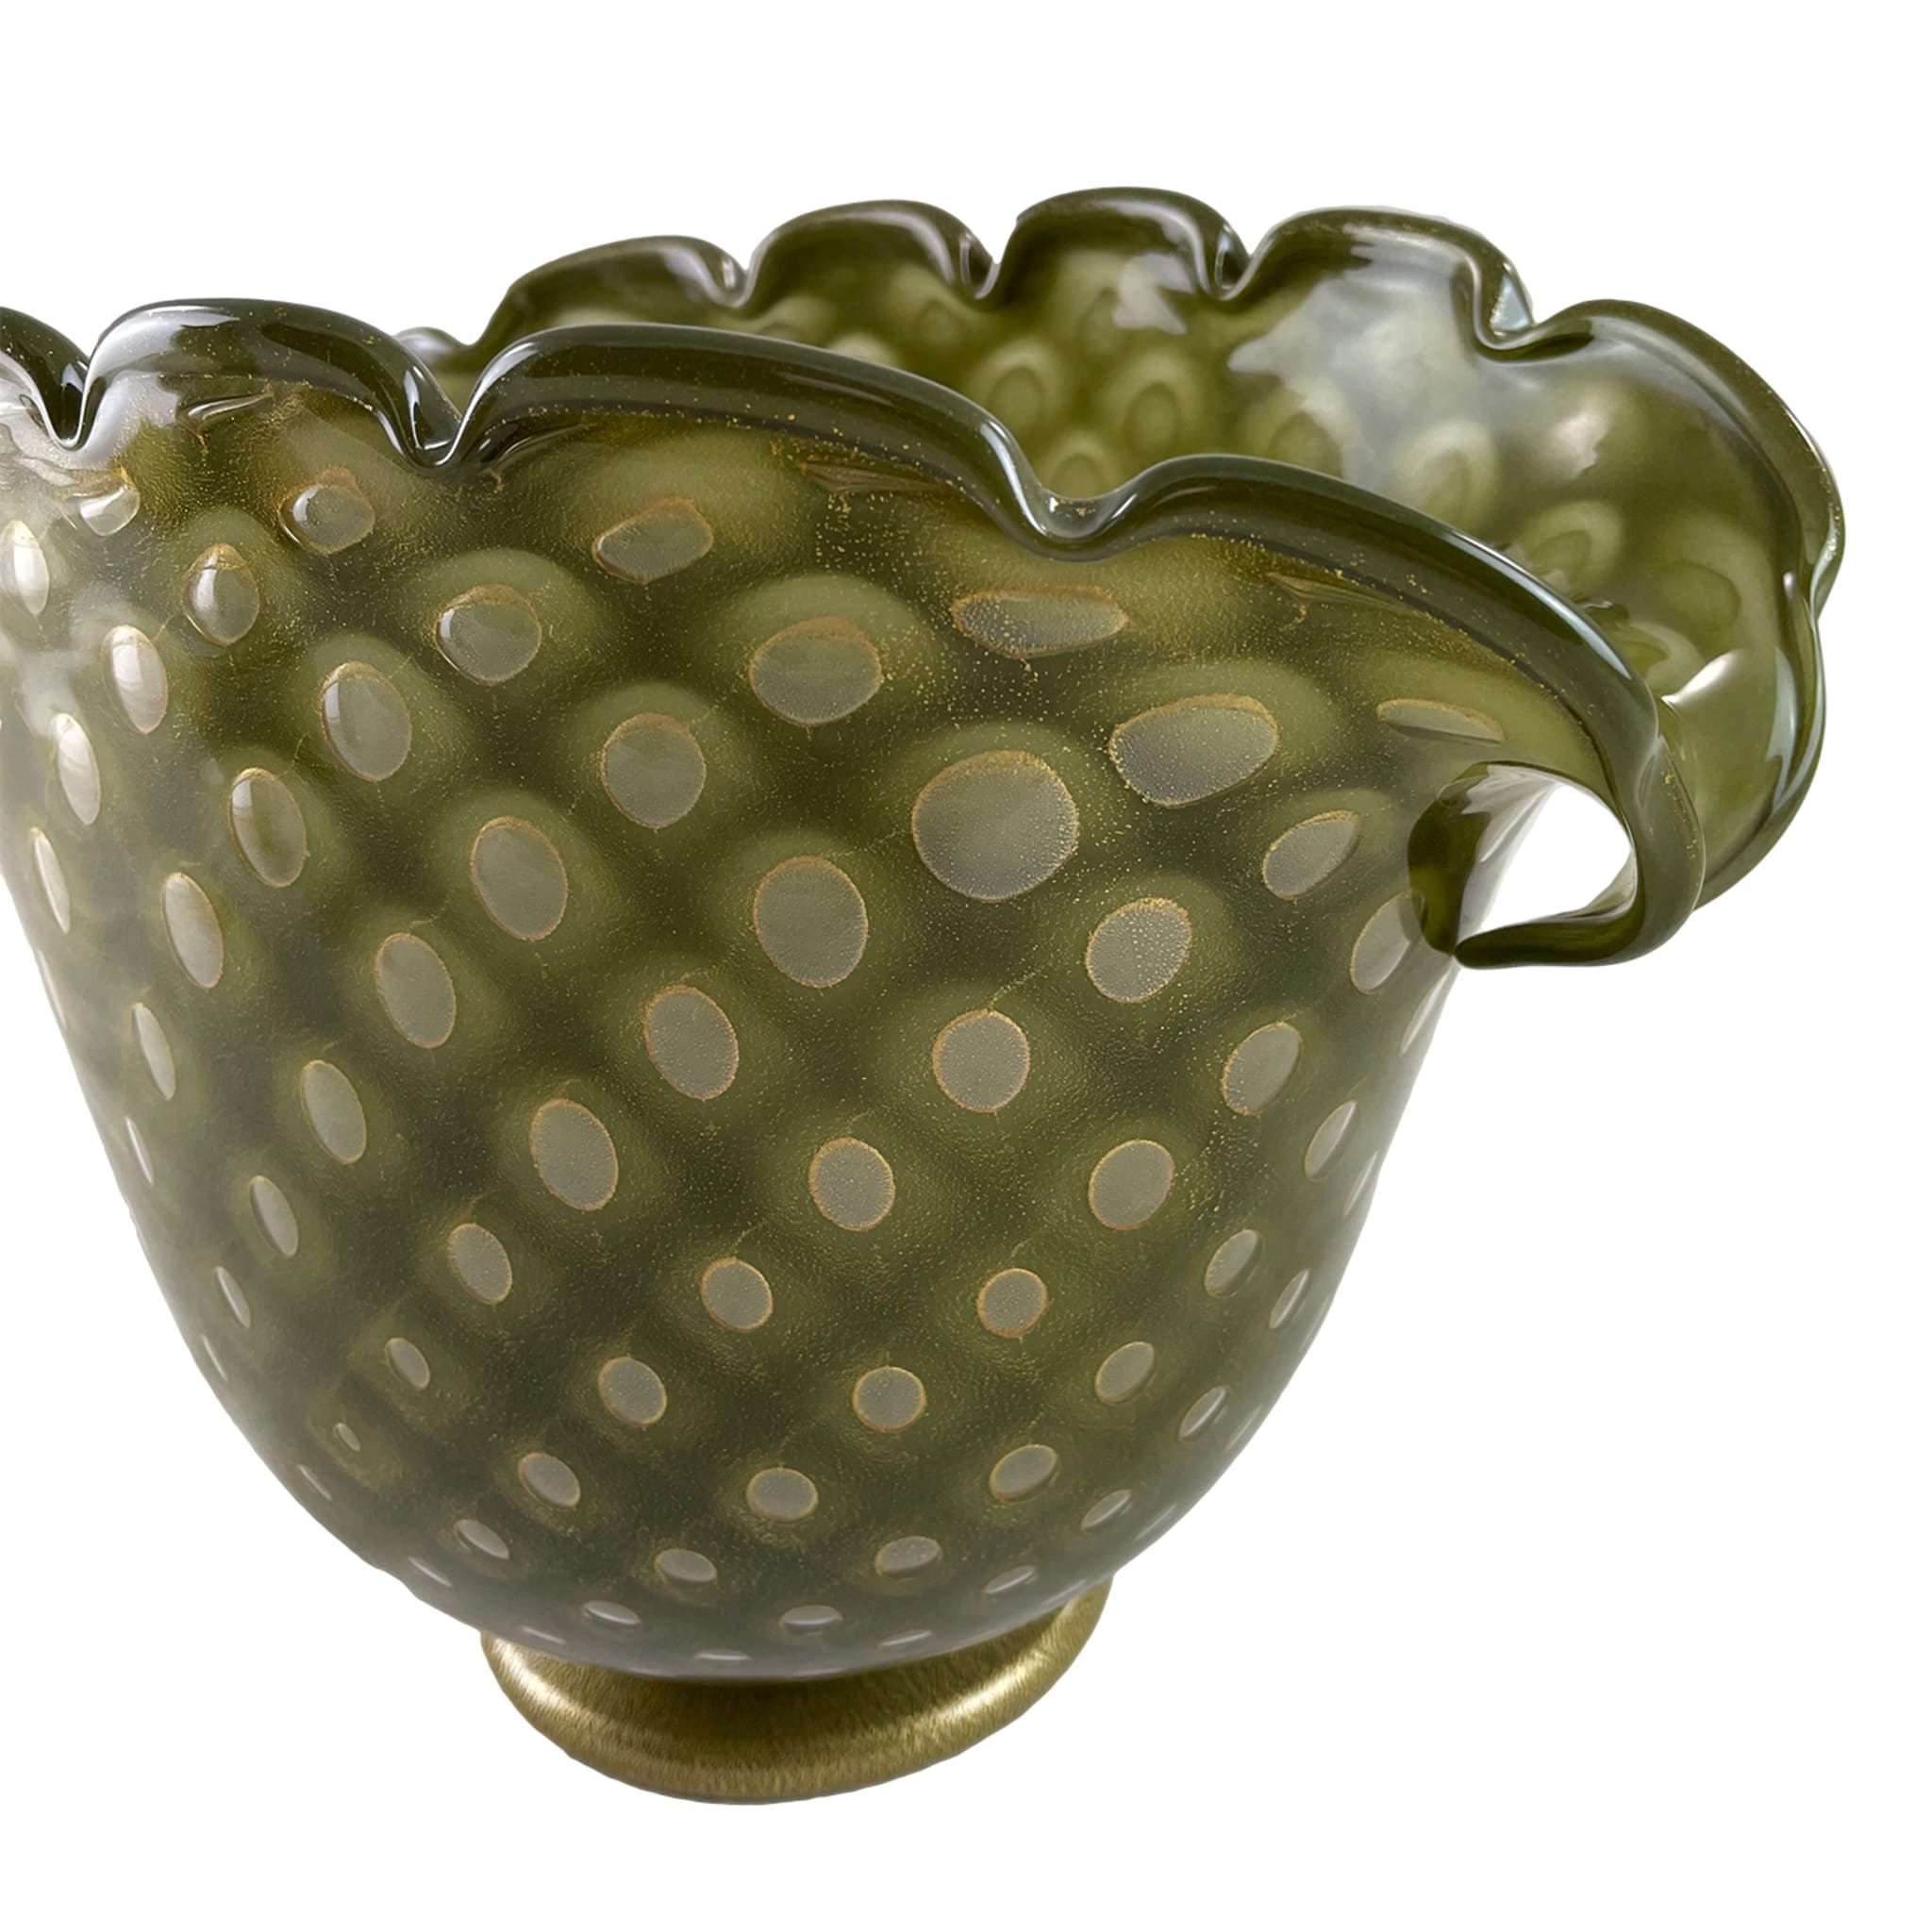 Conchiglia Small Zoomorphic Green Glass Vase - Alternative view 1